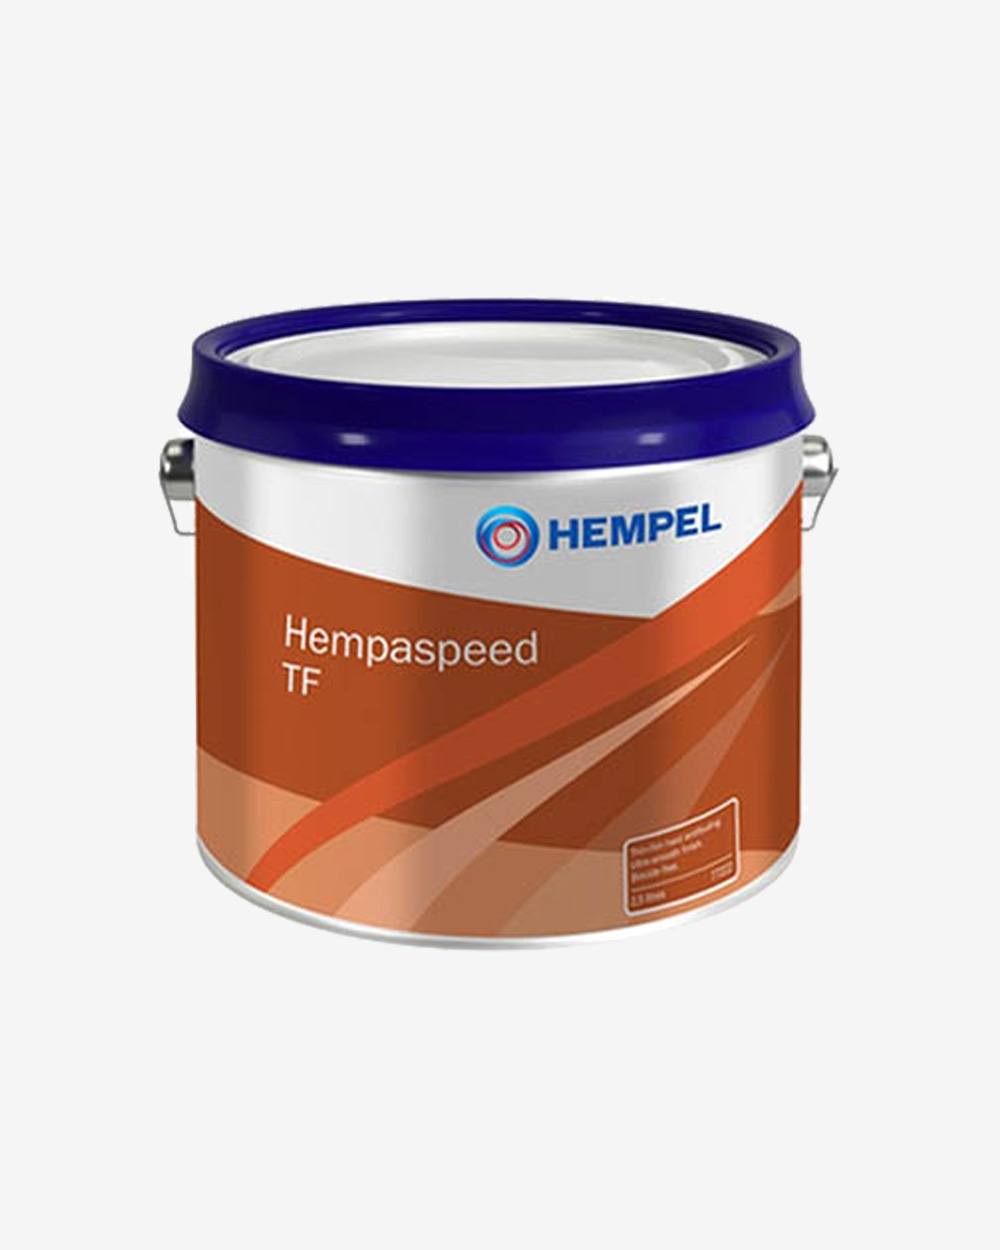 Se Hempel Hempaspeed True Blue - 2,5 liter hos Picment.dk